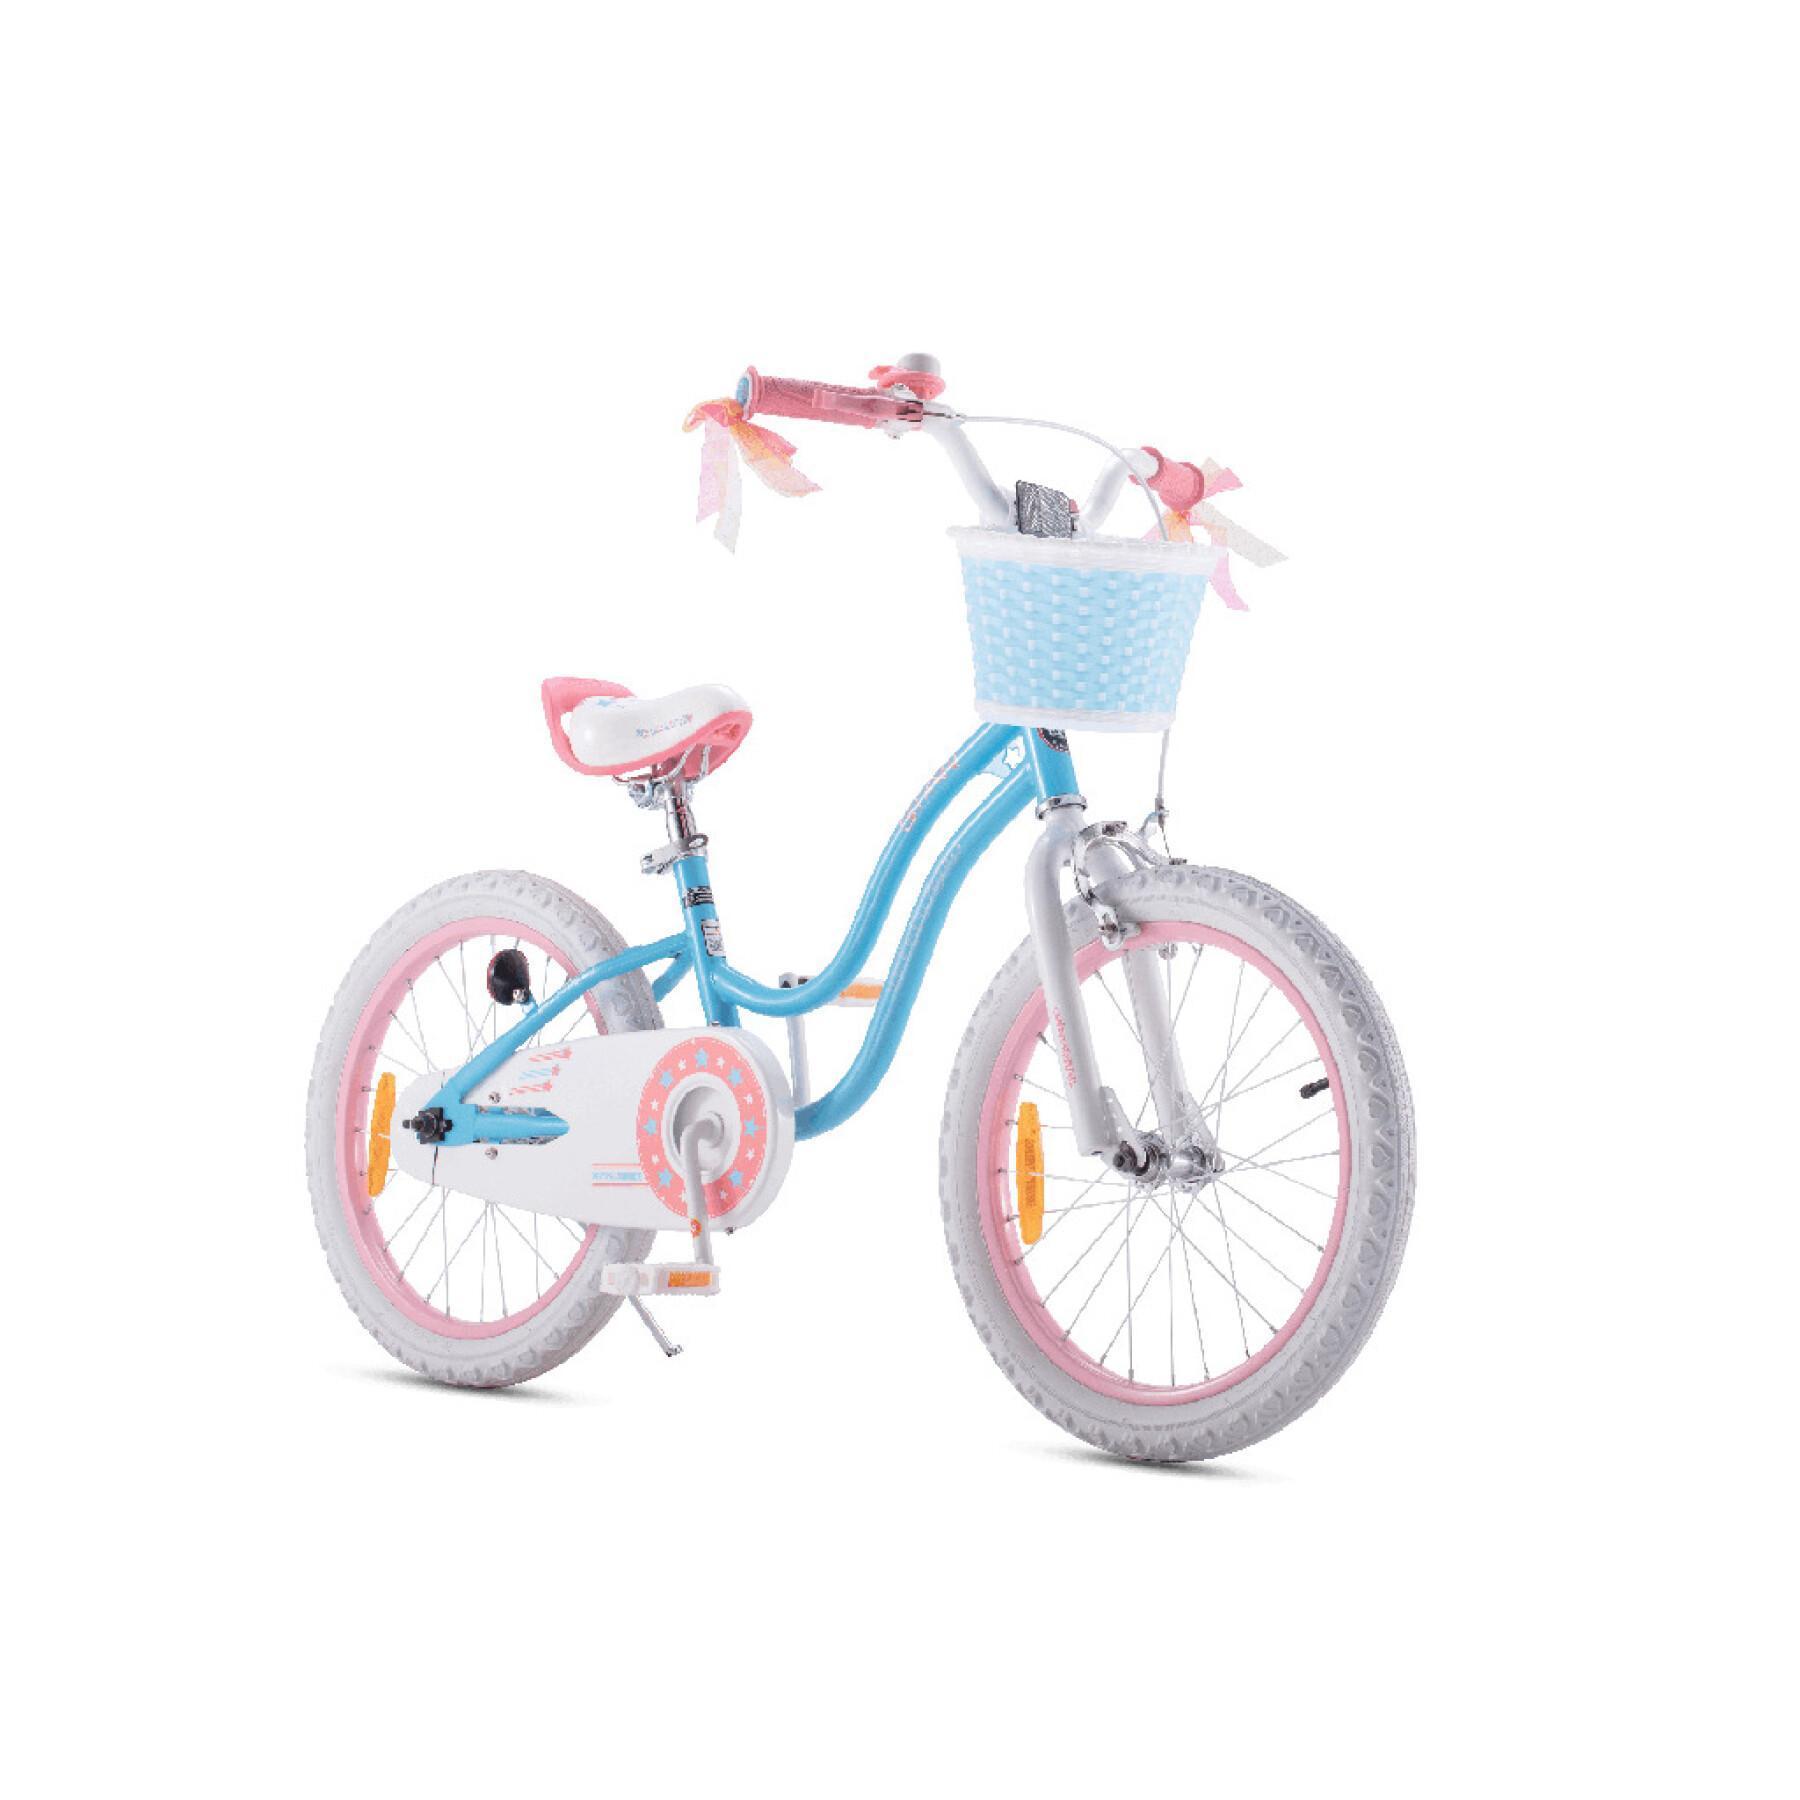 Bicicleta para niños RoyalBaby Star 14